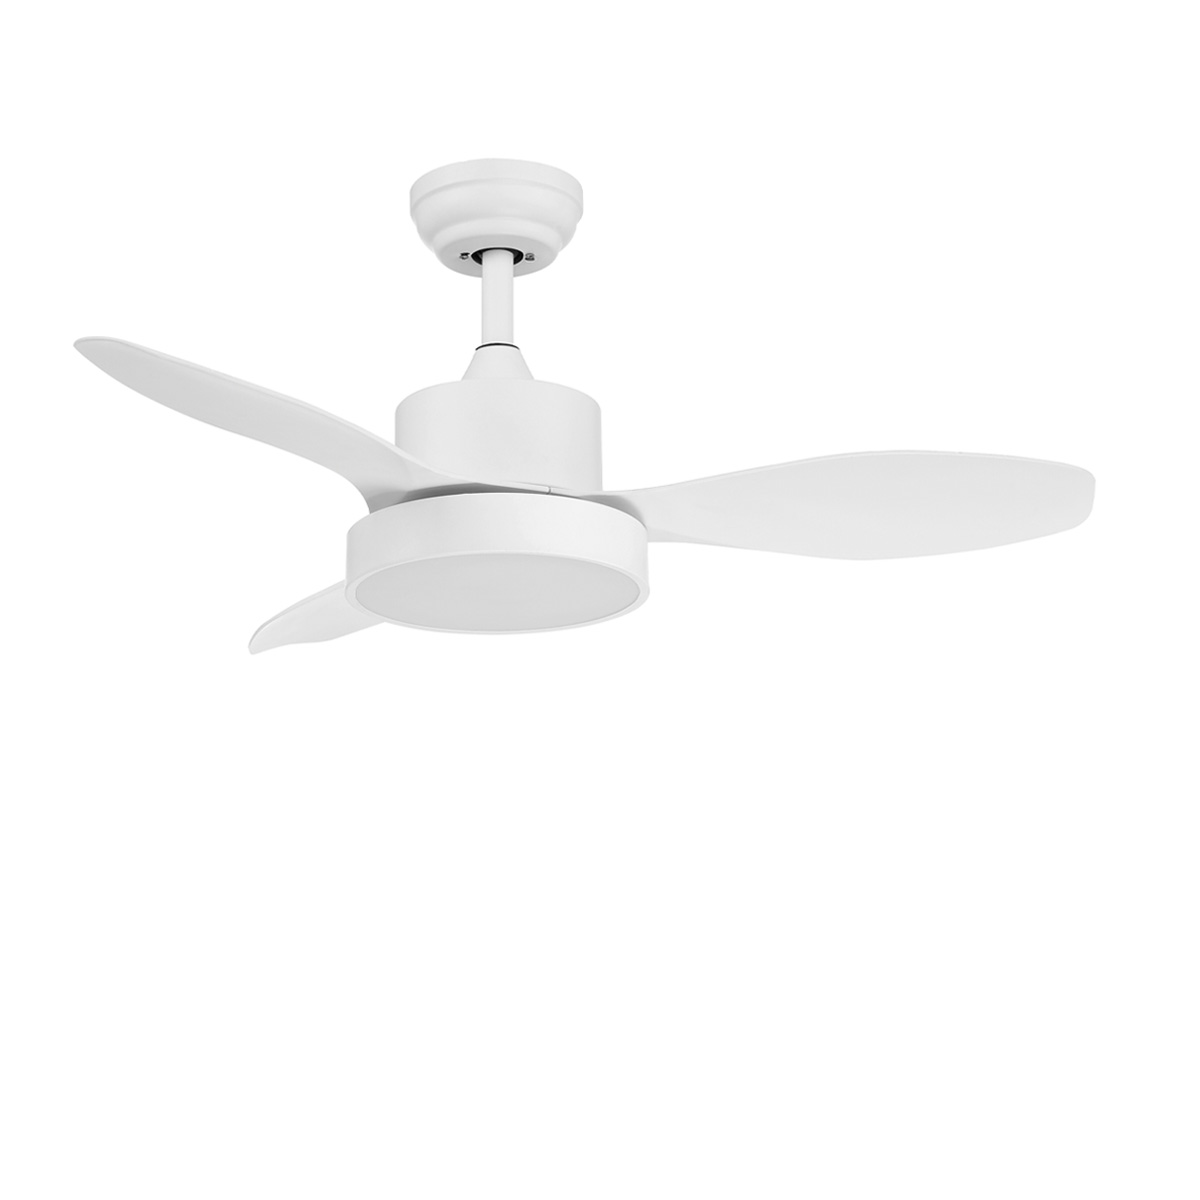 Μικρός λευκός ανεμιστήρας οροφής RIGA XS small white ceiling fan